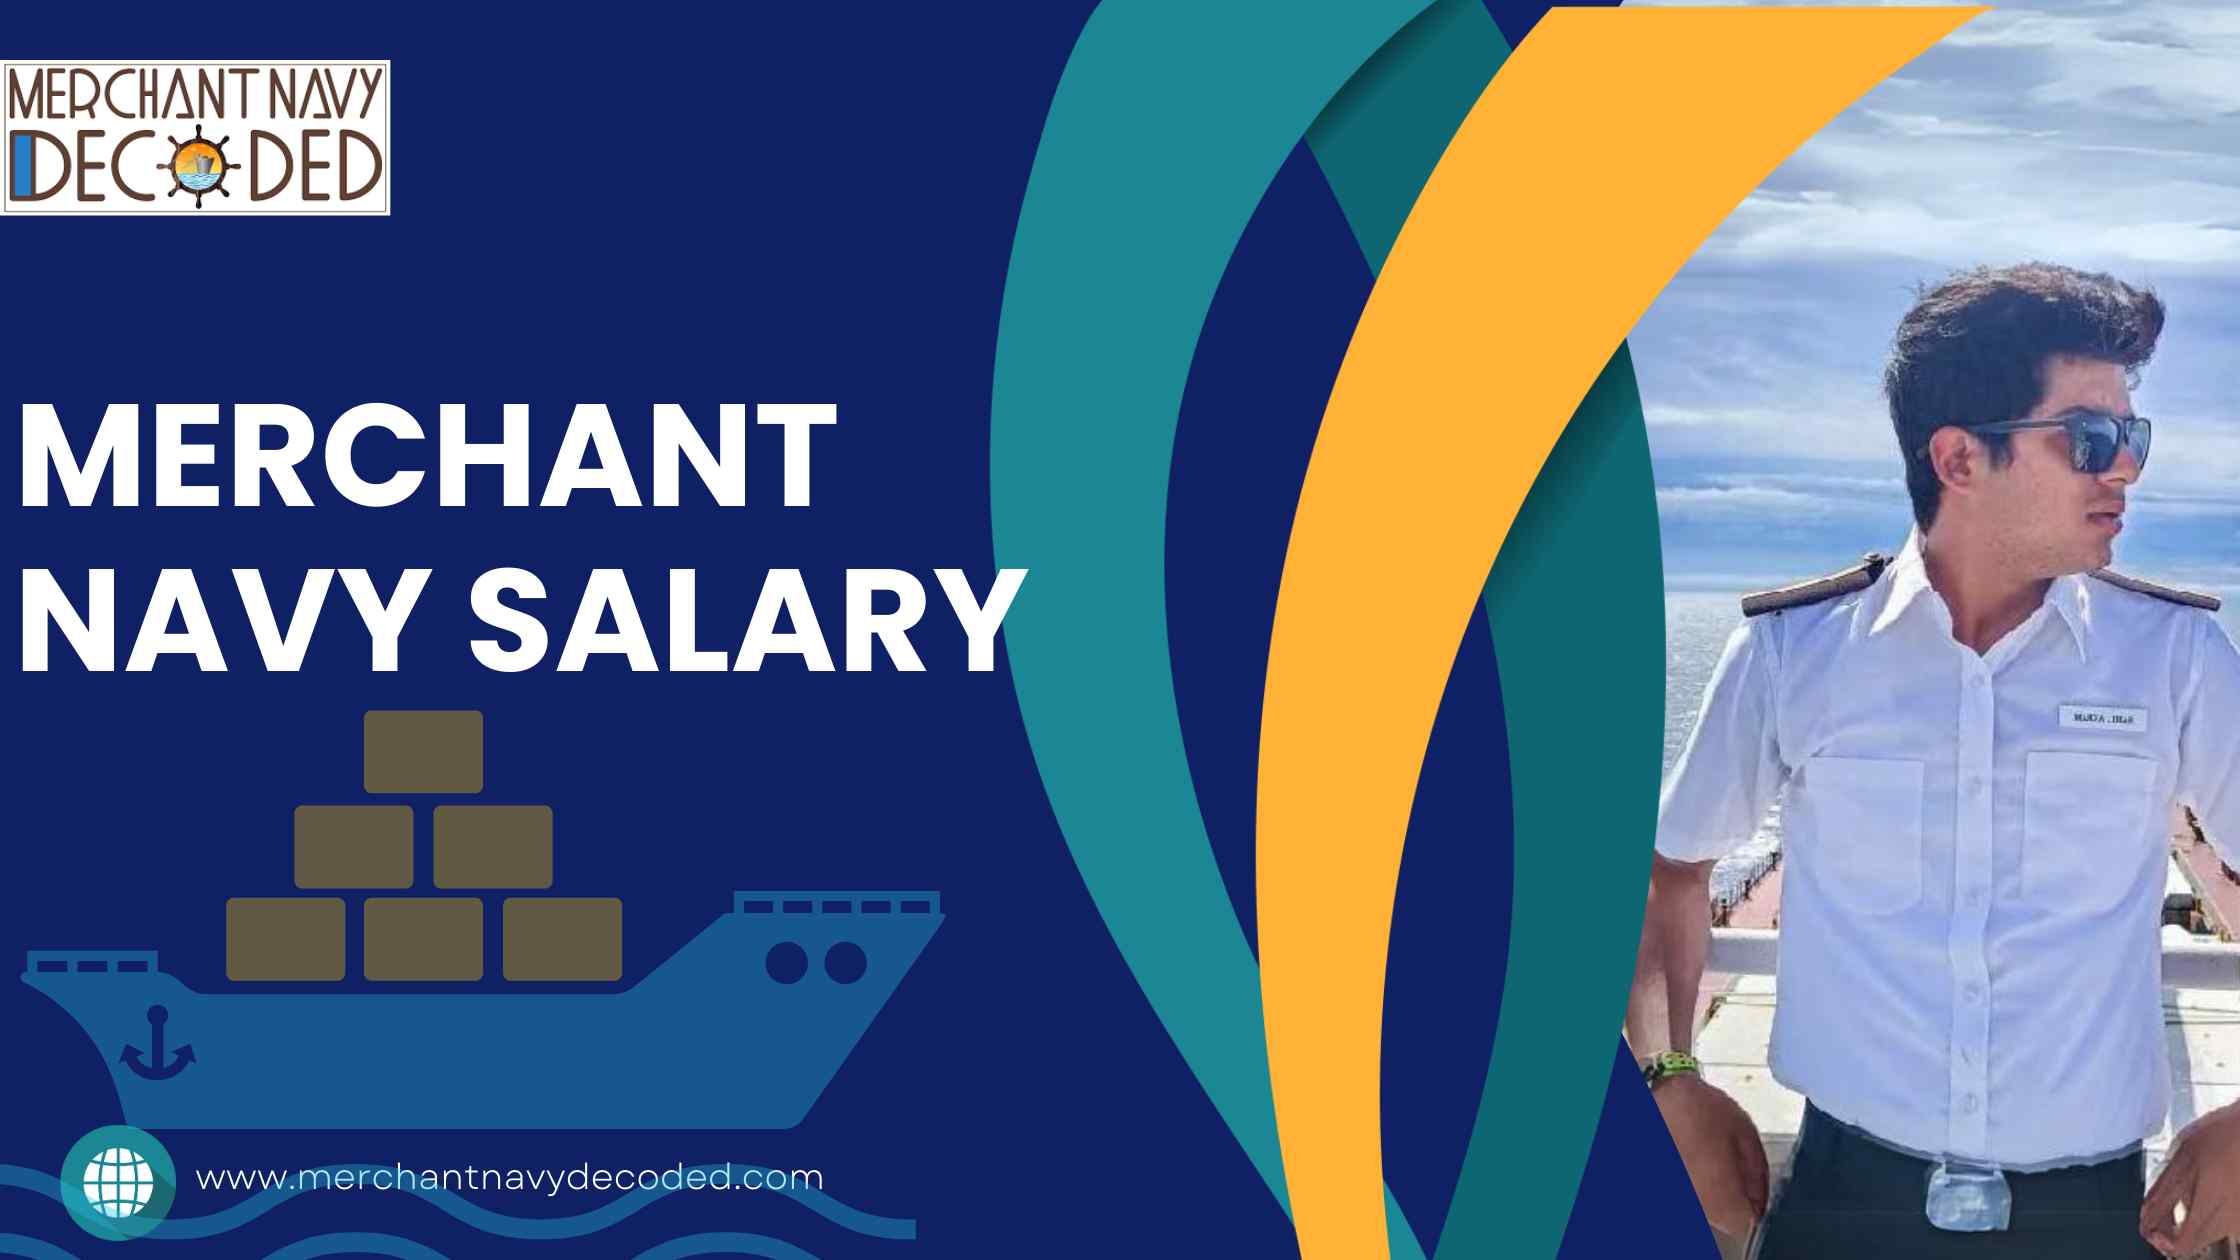 merchant navy salary